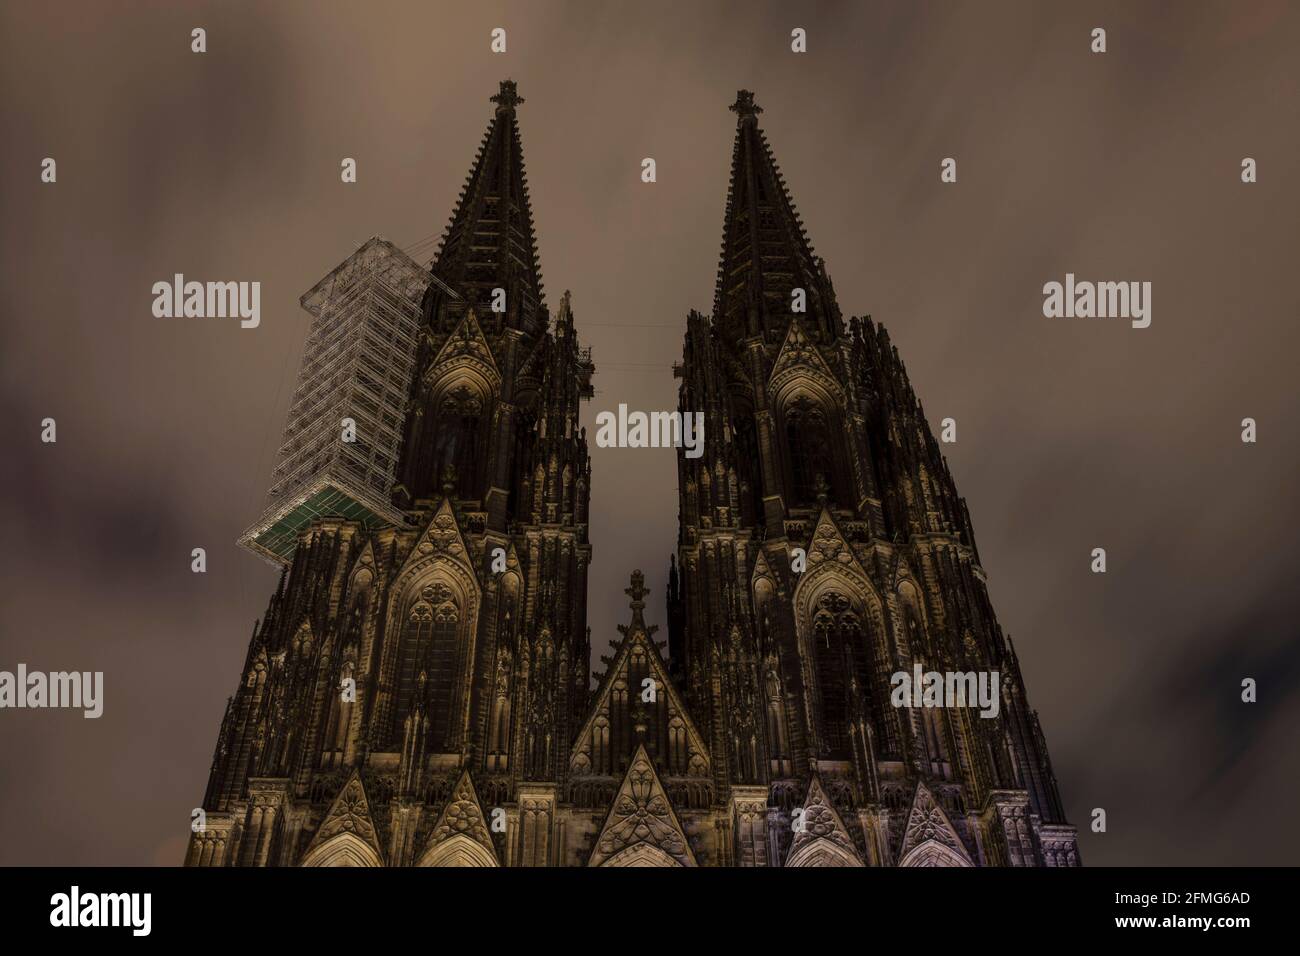 Toque de queda a partir de las 9 pm durante el cierre de la pandemia de corona el 5th de mayo. 2021. La catedral no está iluminada durante estas noches, Colonia, Alemania. Ausgangssp Foto de stock